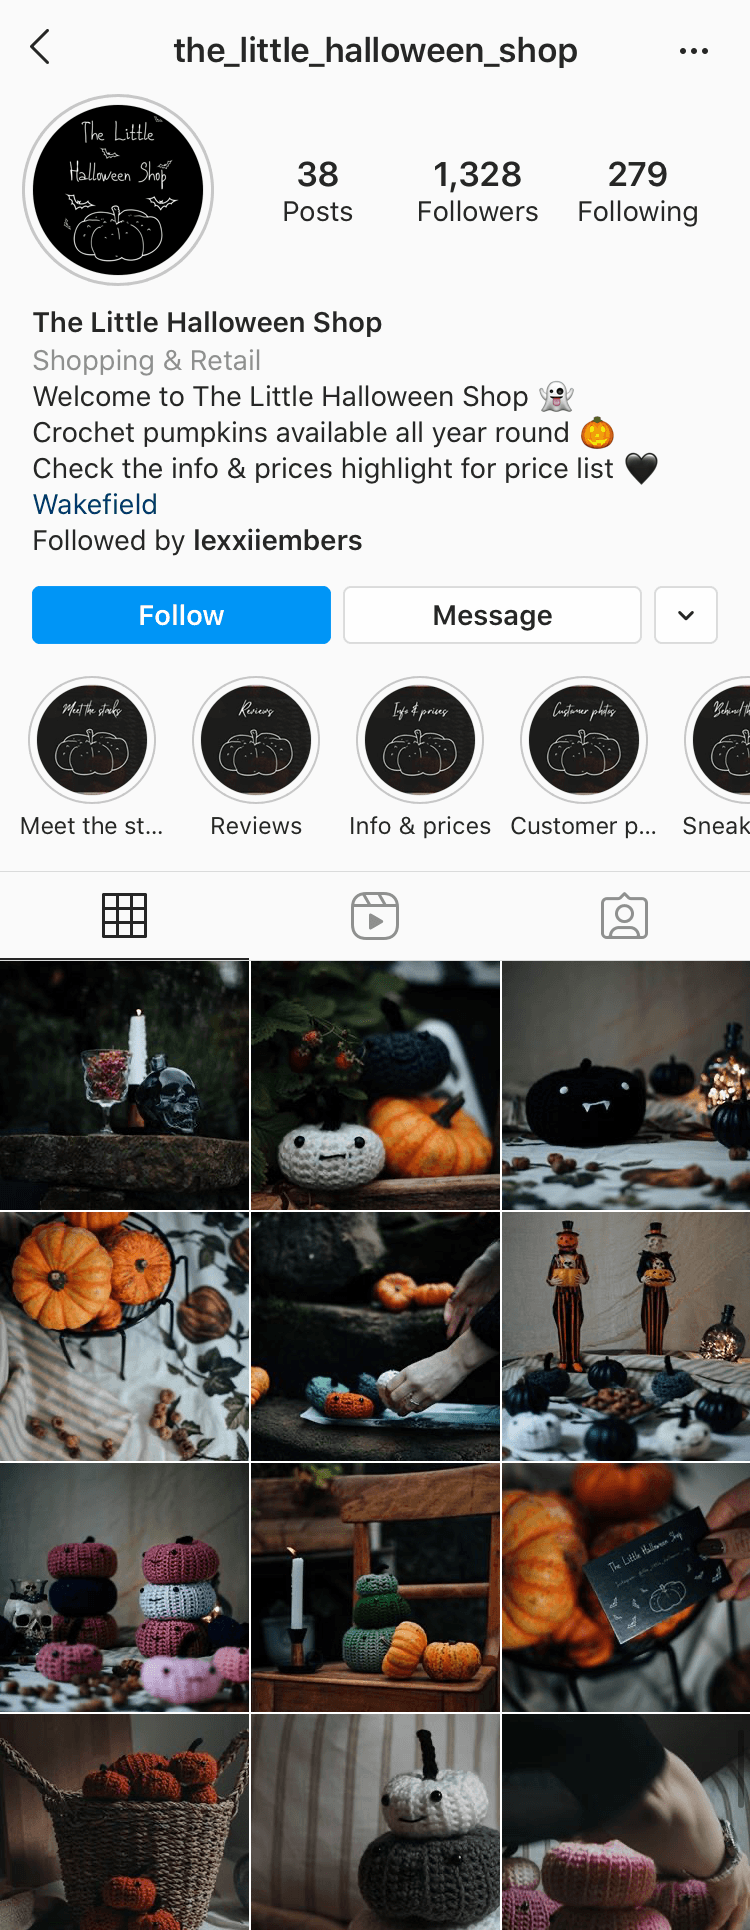 Instagram account @the_little_halloween_shop